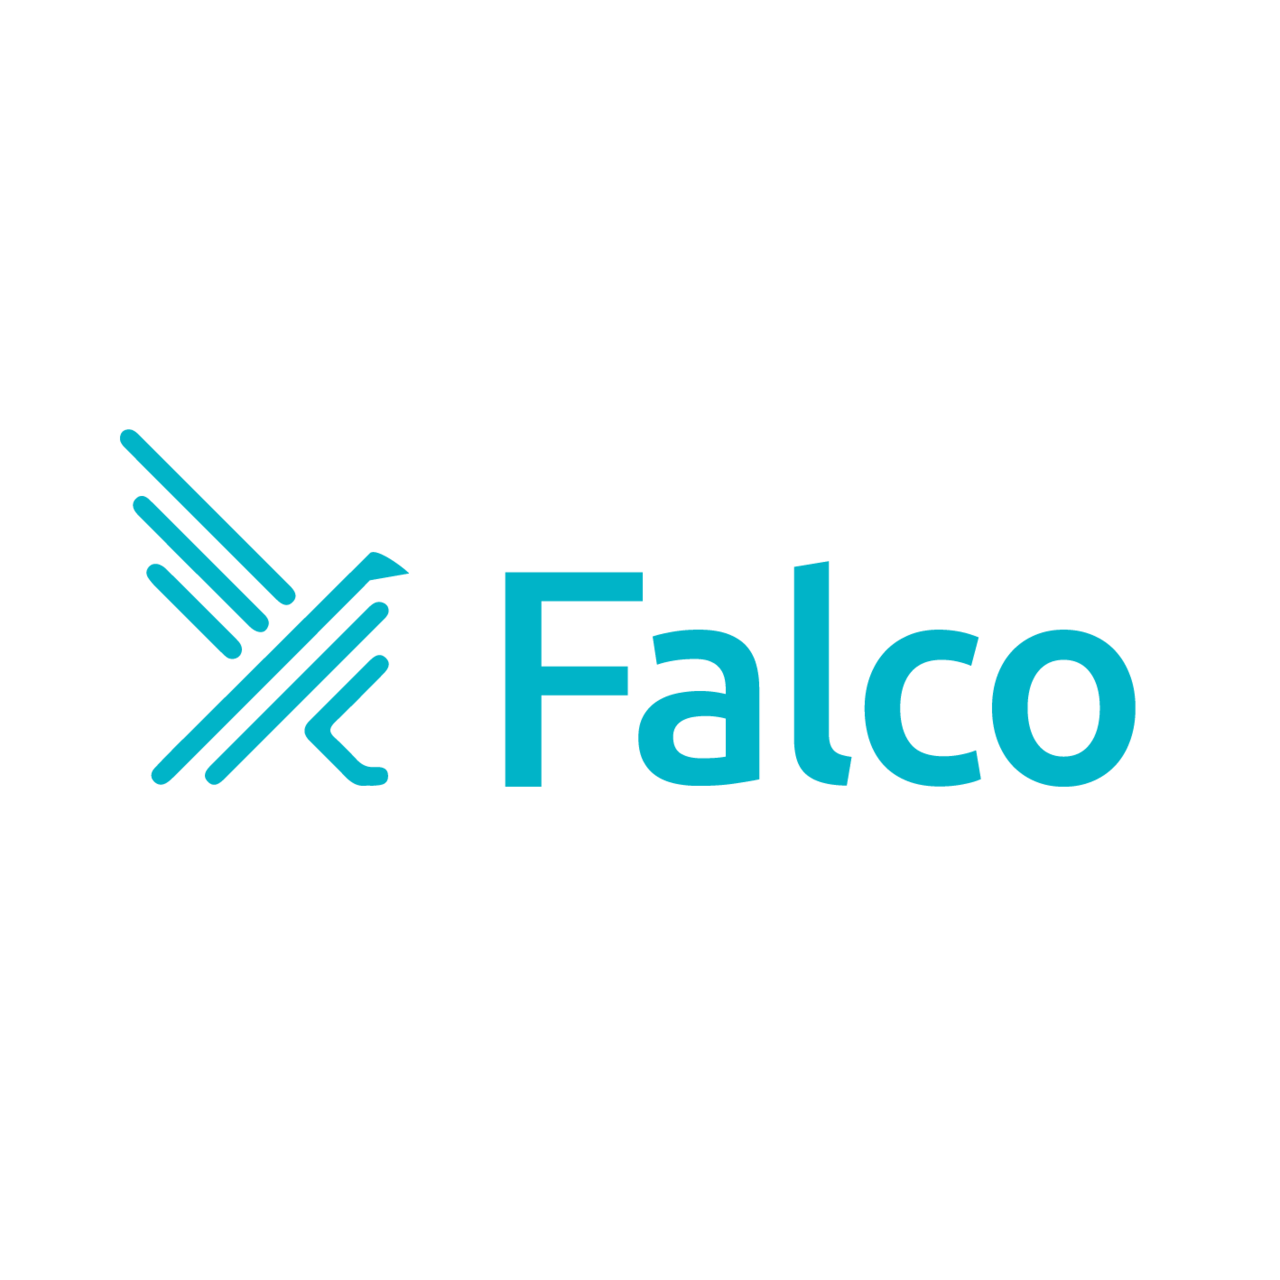 振る舞い検知のための仕組み「Falco」